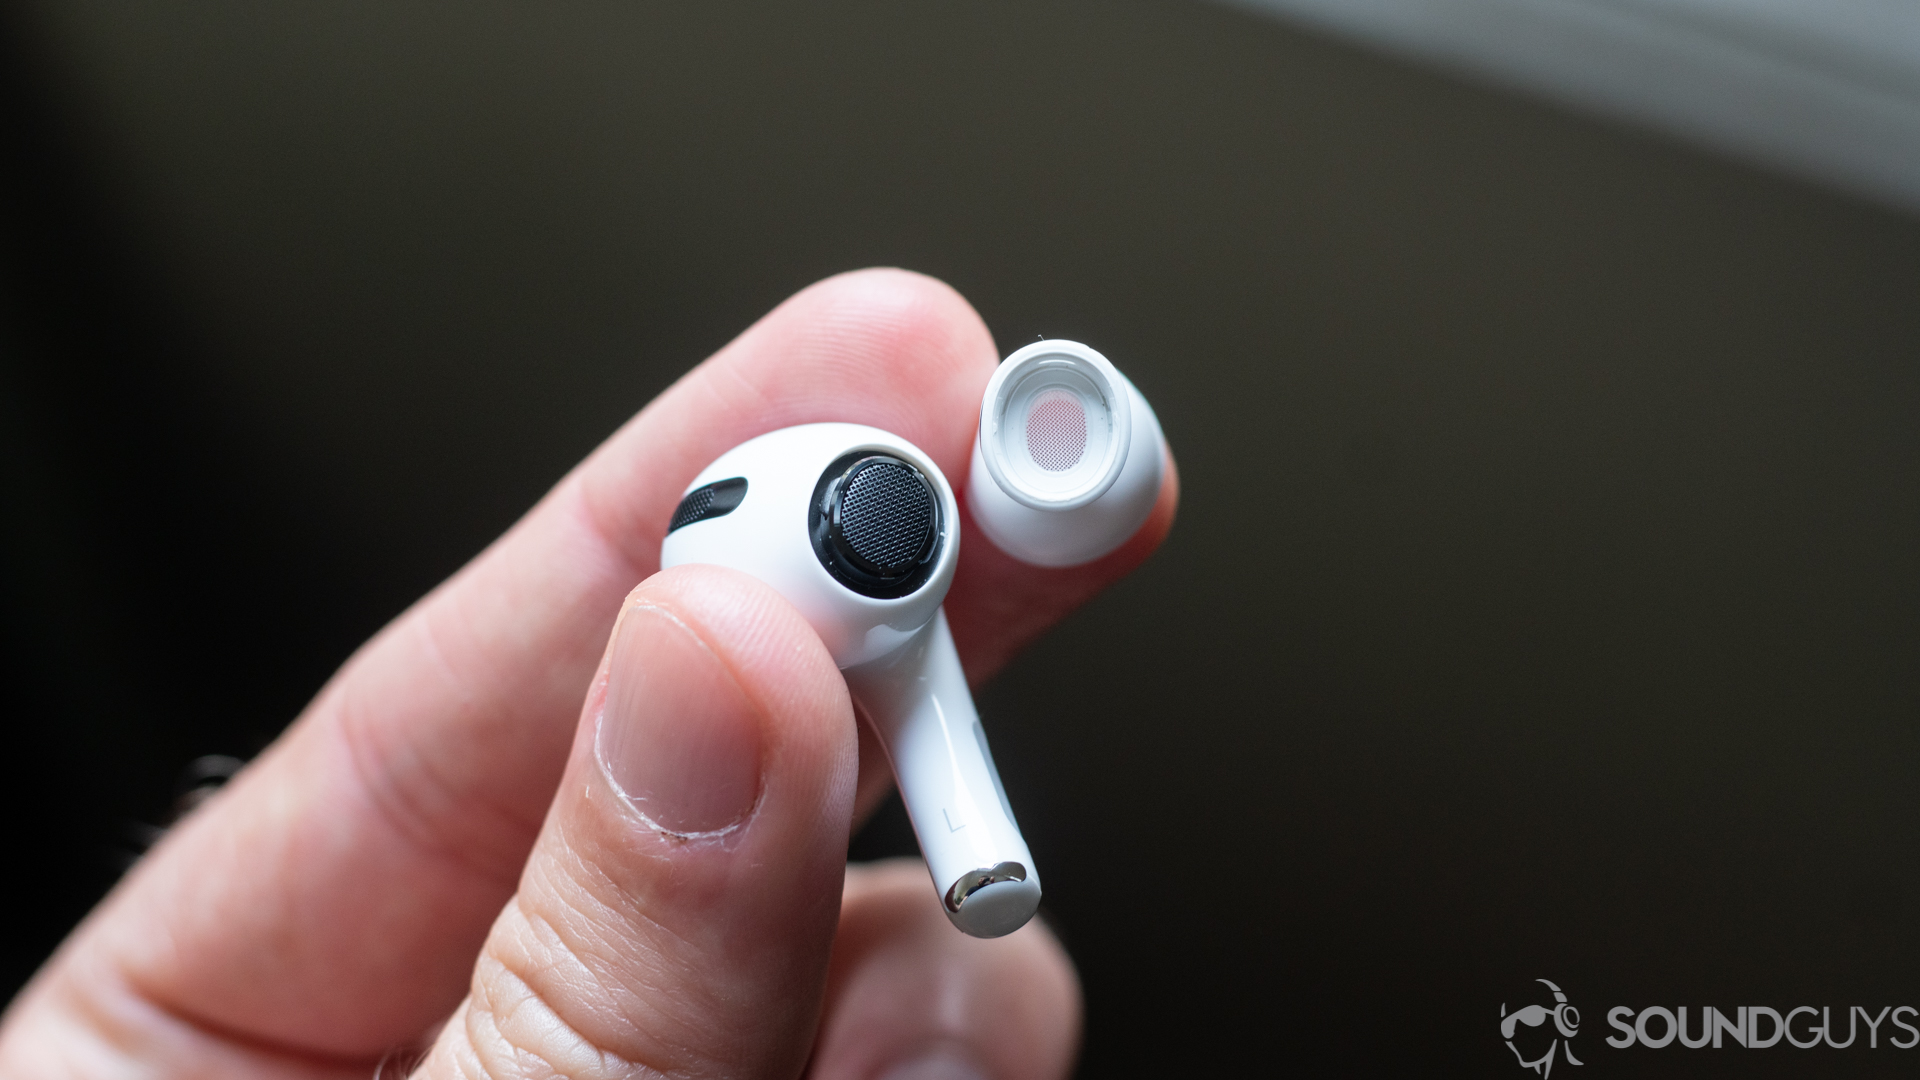 Una imagen de los auriculares de silicona Apple AirPods Pro retirados del auricular y colocados en la mano del hombre.